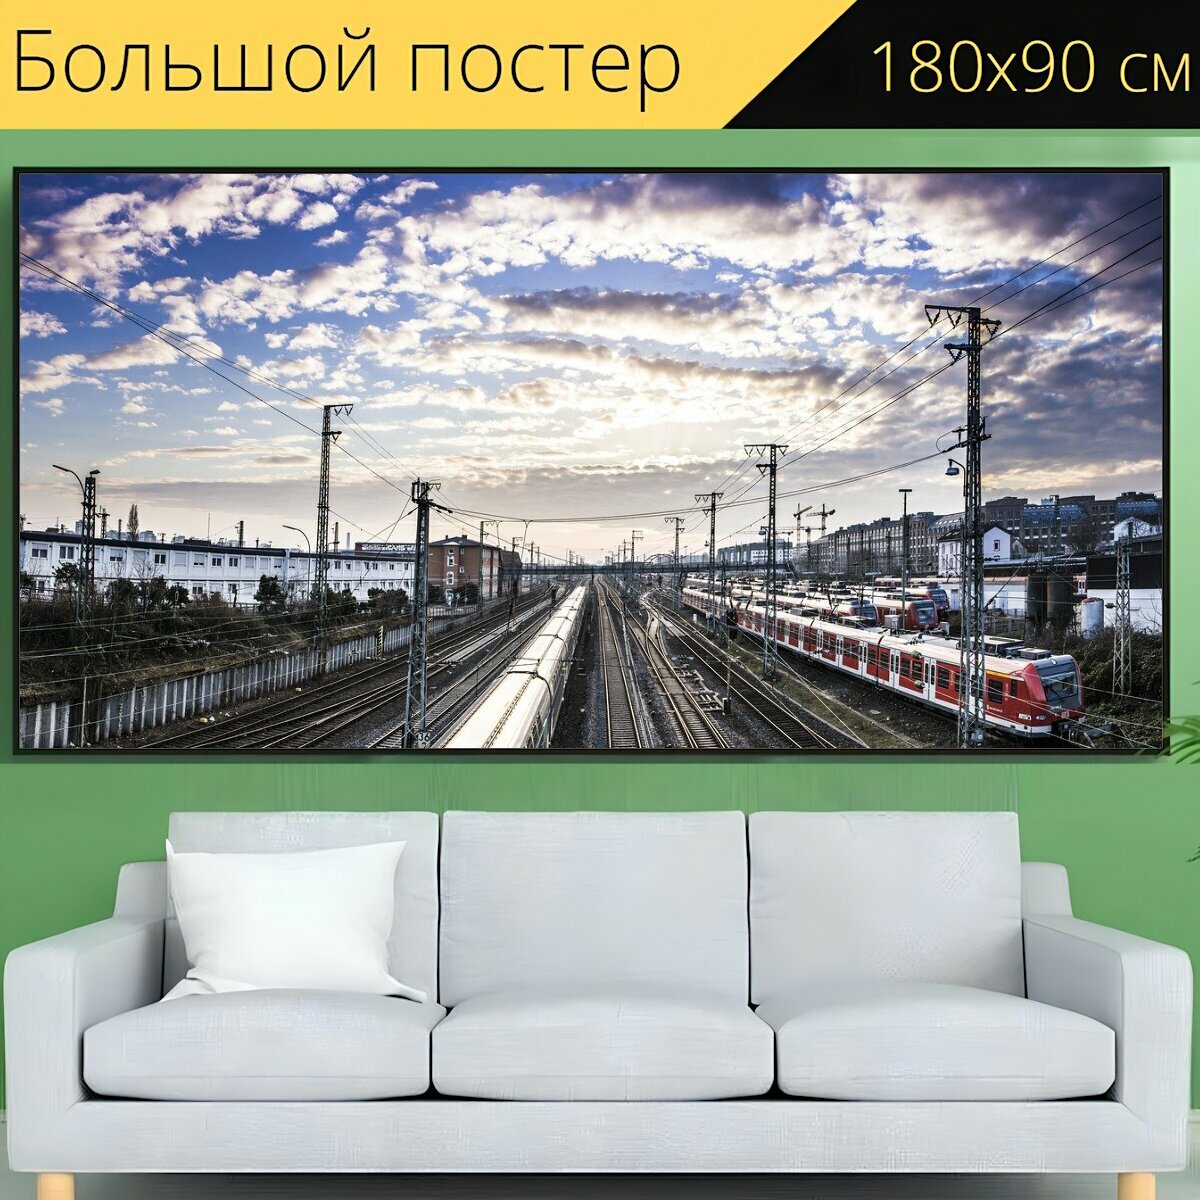 Большой постер "Поезда, железная дорога, рельсы" 180 x 90 см. для интерьера